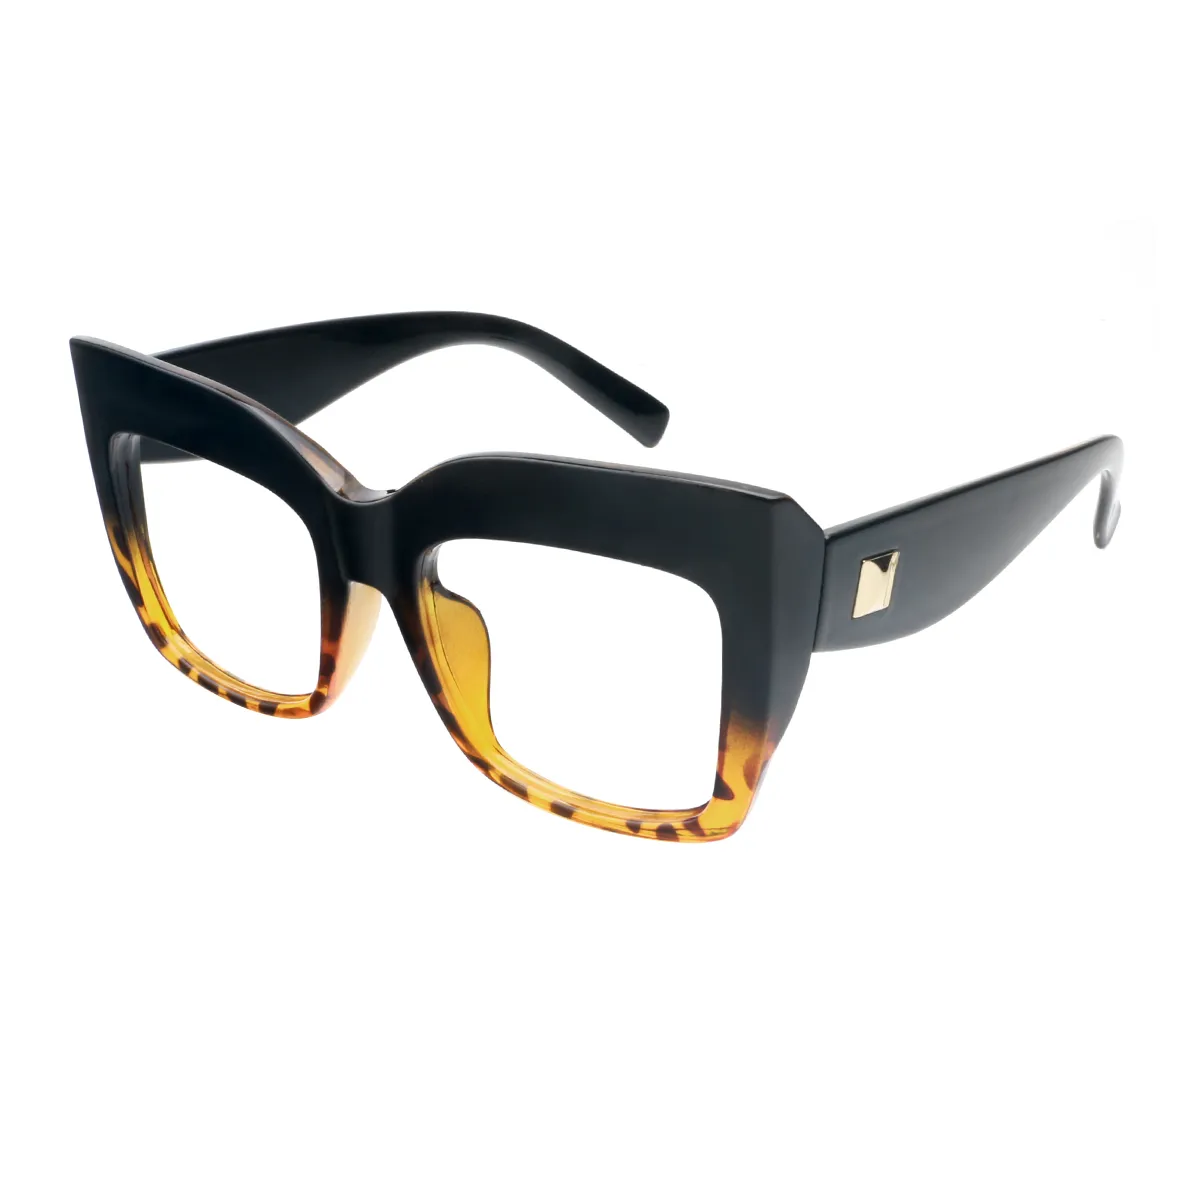 Gayle - Square Black-Tortoiseshell Glasses for Women